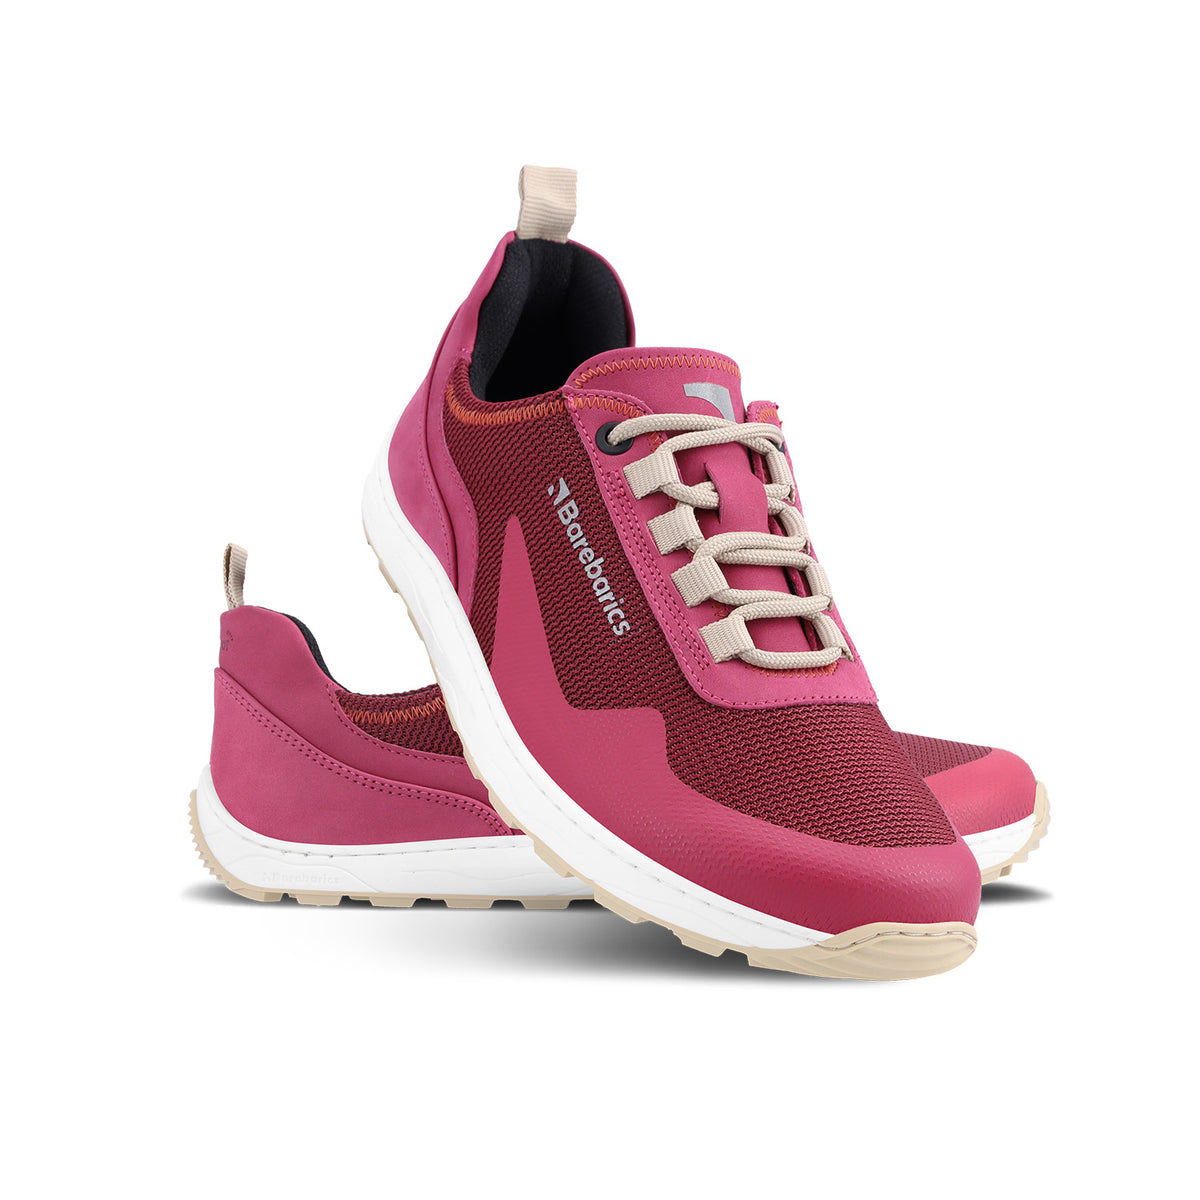 Barefoot Sneakers Barebarics Wanderer - Dark Pink 2  - OzBarefoot